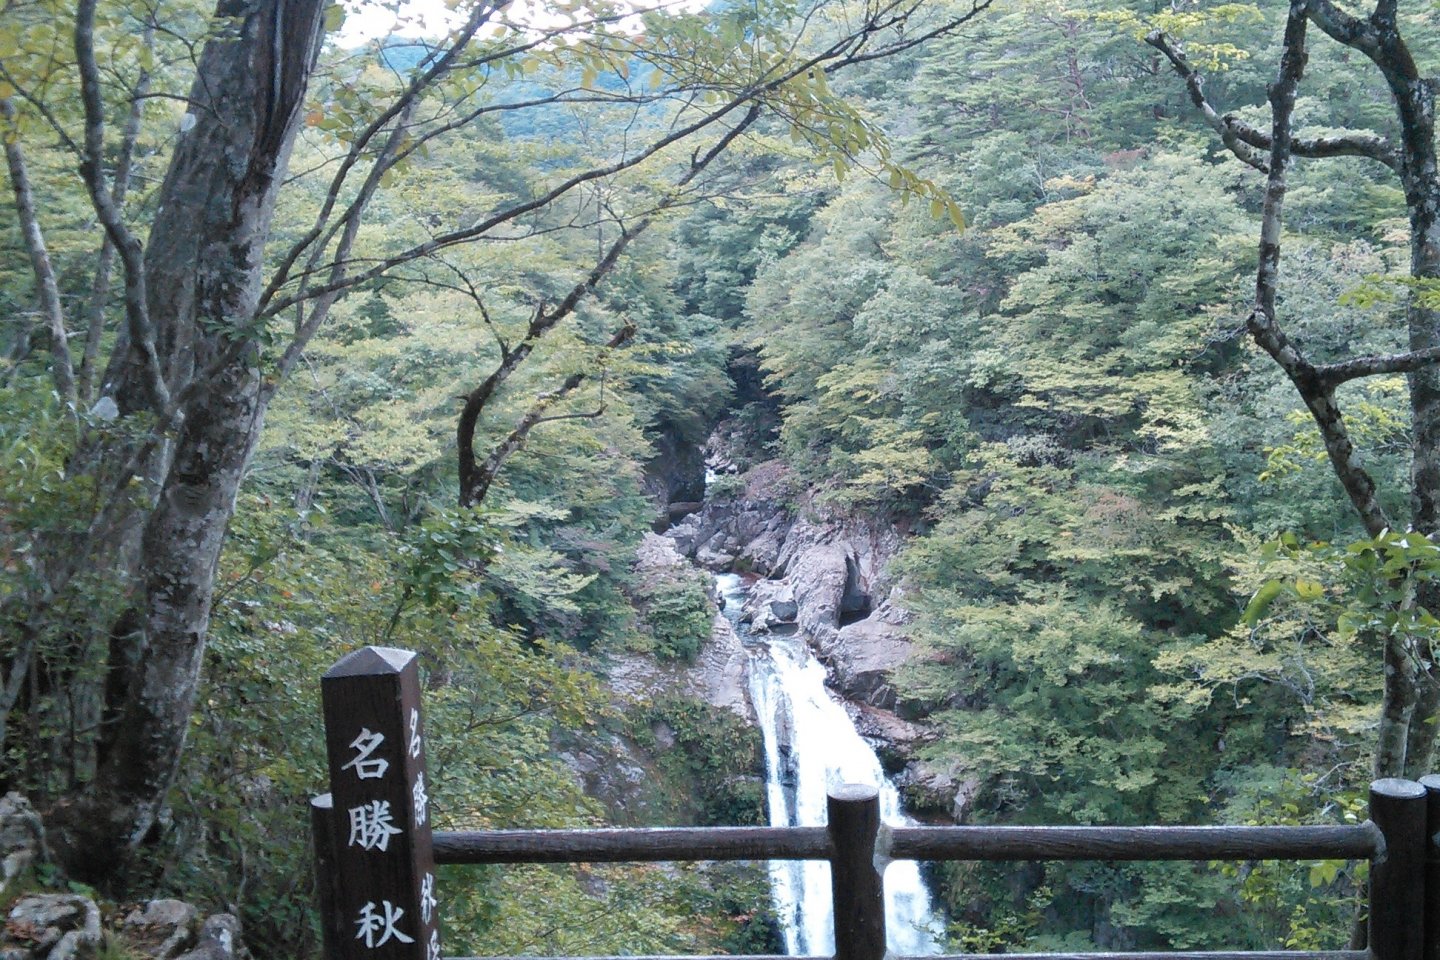 Indahnya air terjun  Akiu dilihat dari tempat observasi di belakang kuil